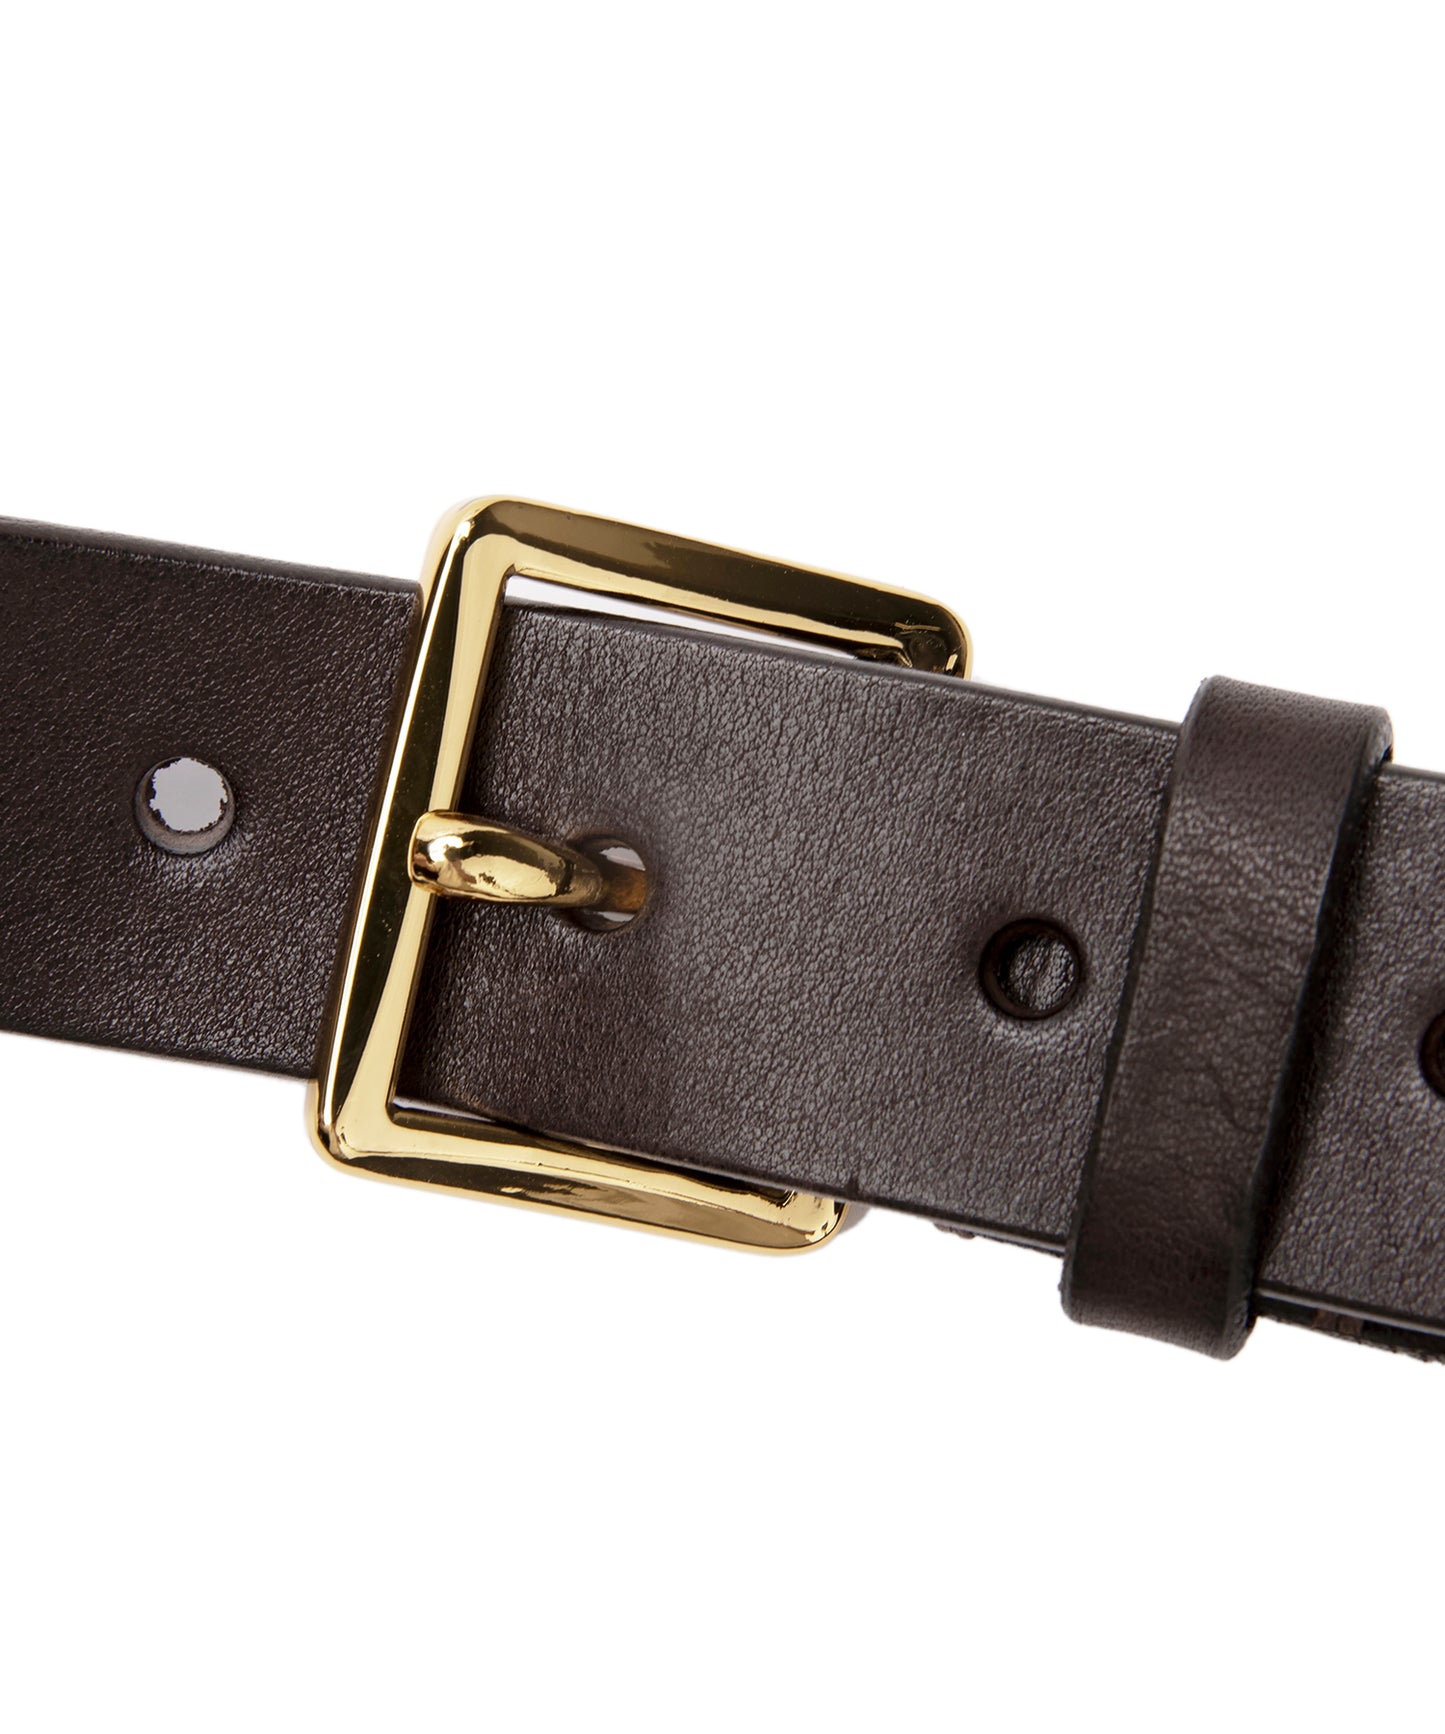 Scquare Buckled Leather Belt